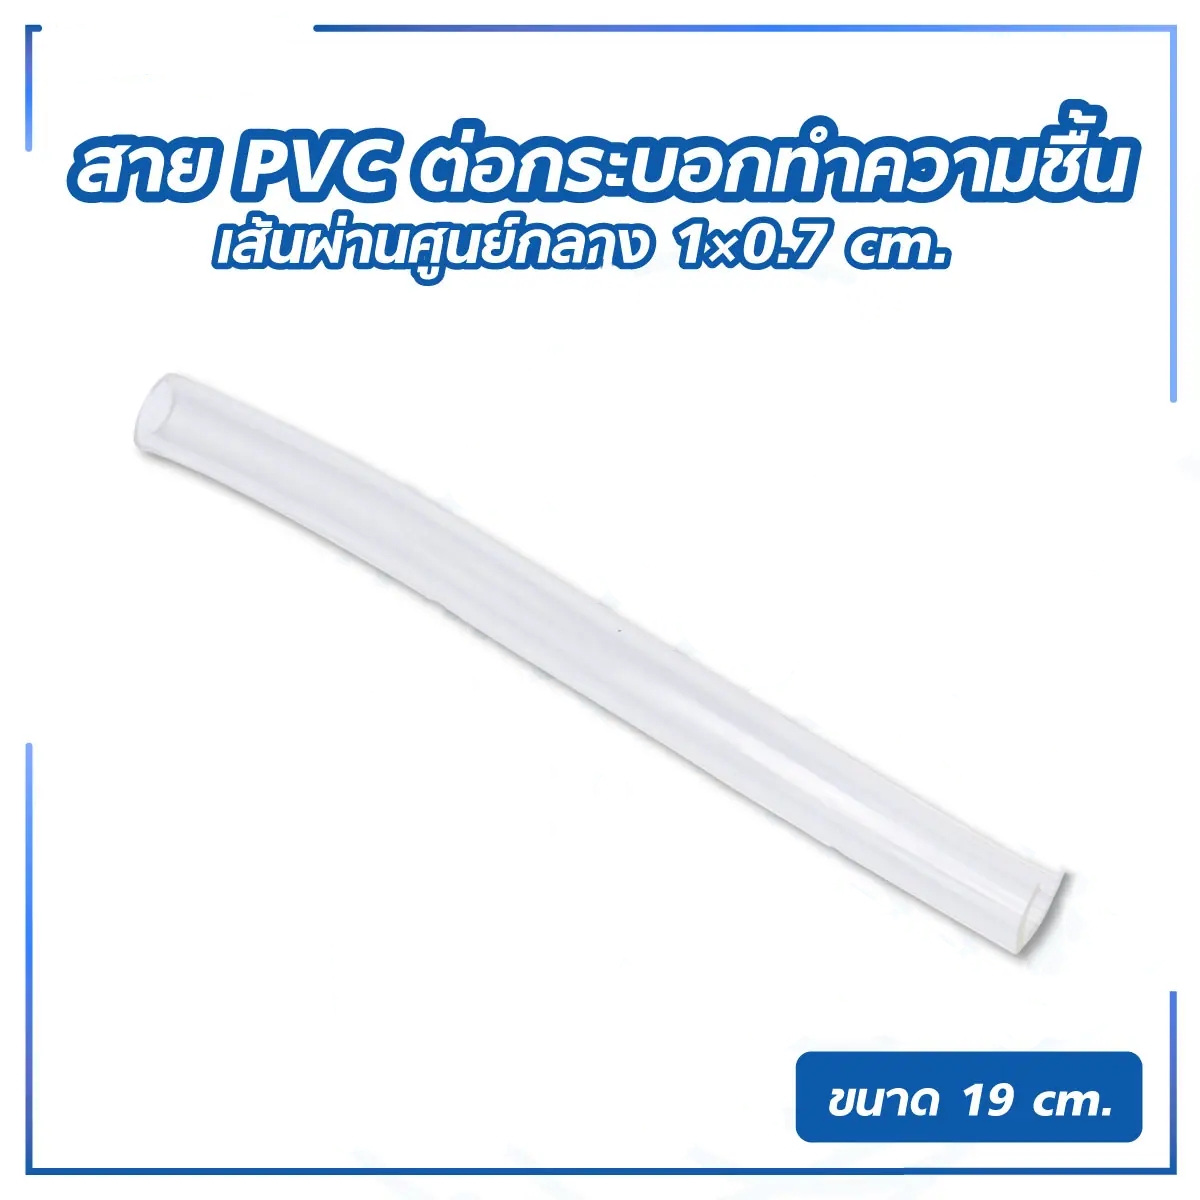 สาย PVC ต่อกระบอกทำความชื้น ยาว 19 ซม.